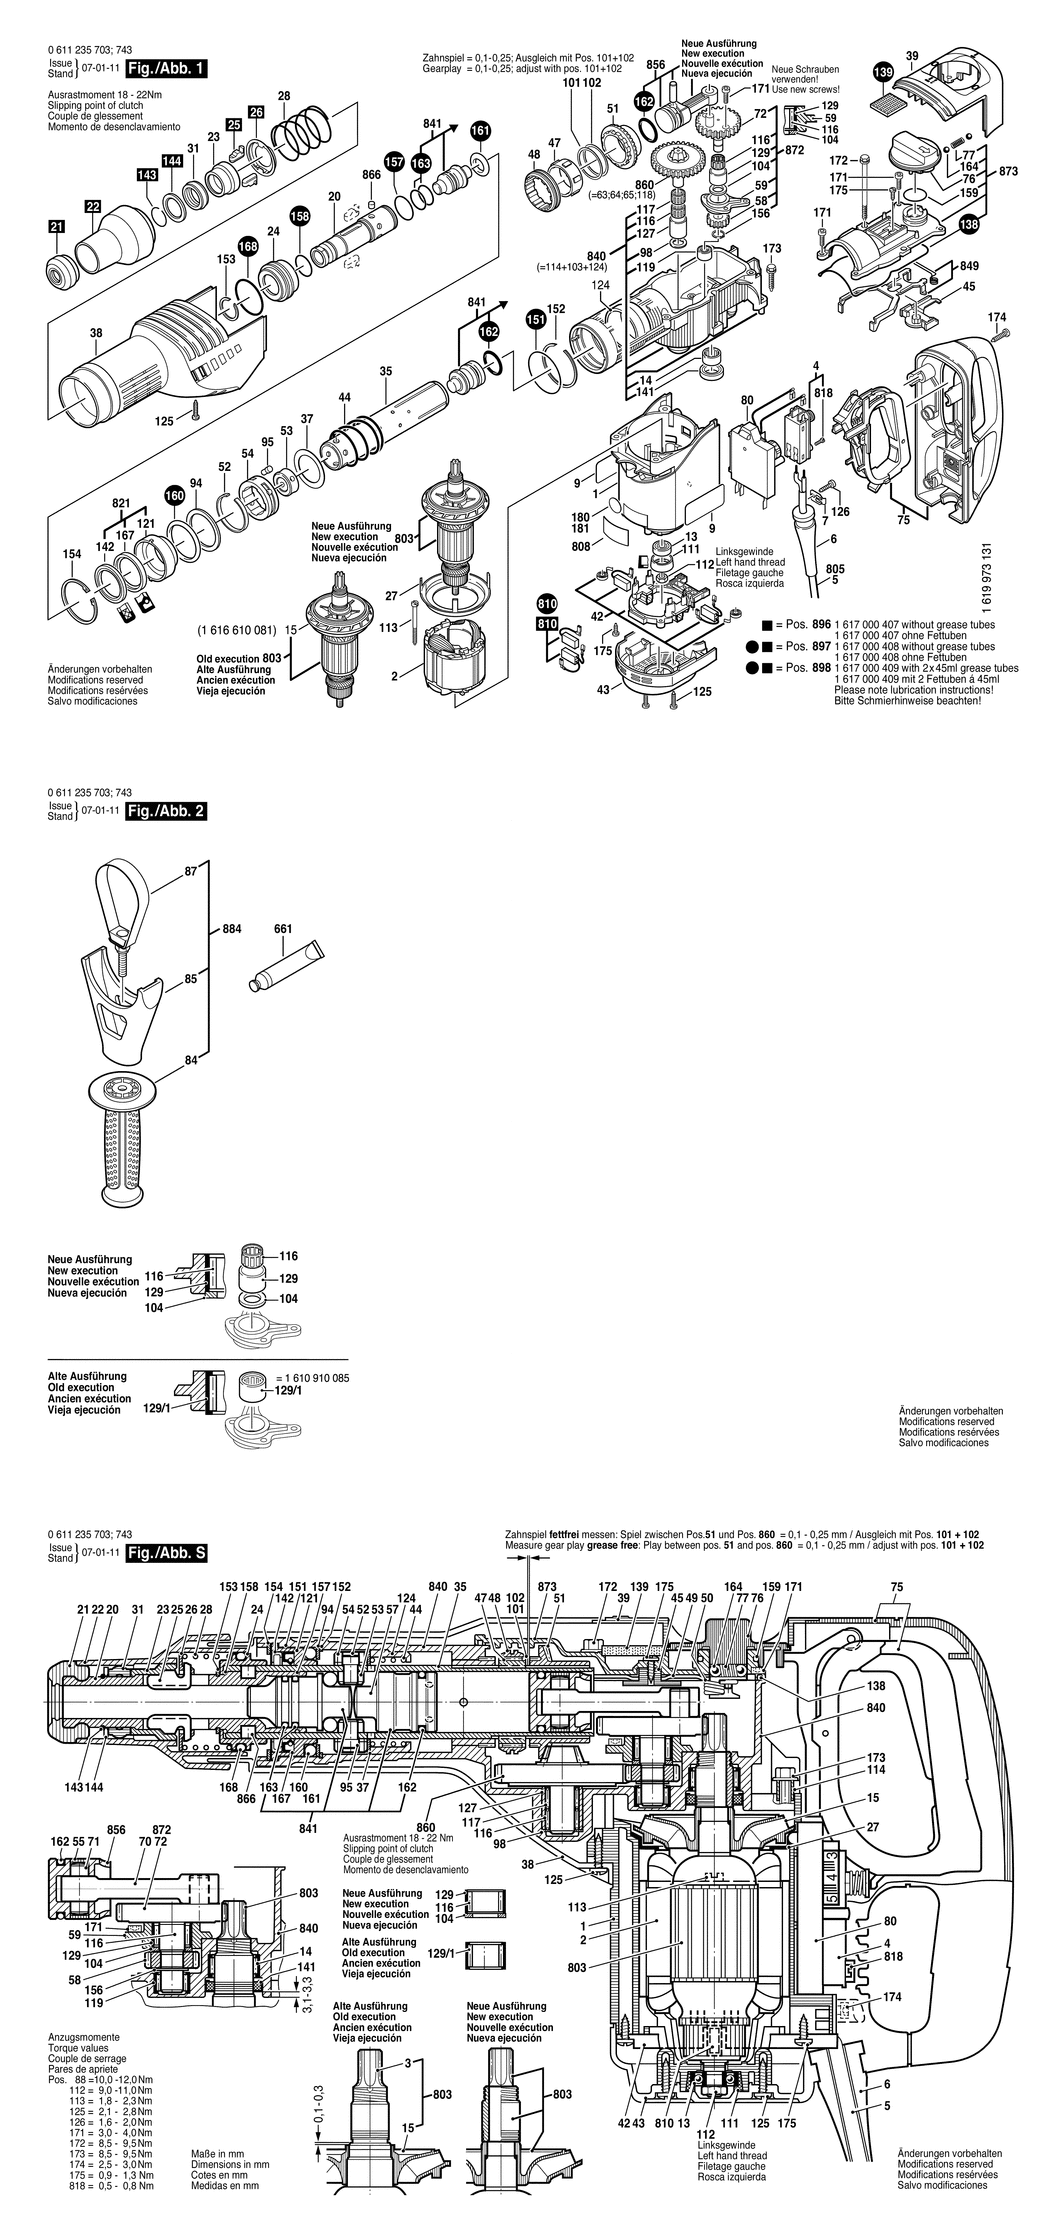 Bosch GBH 7 DE / 0611235750 / I 230 Volt Spare Parts